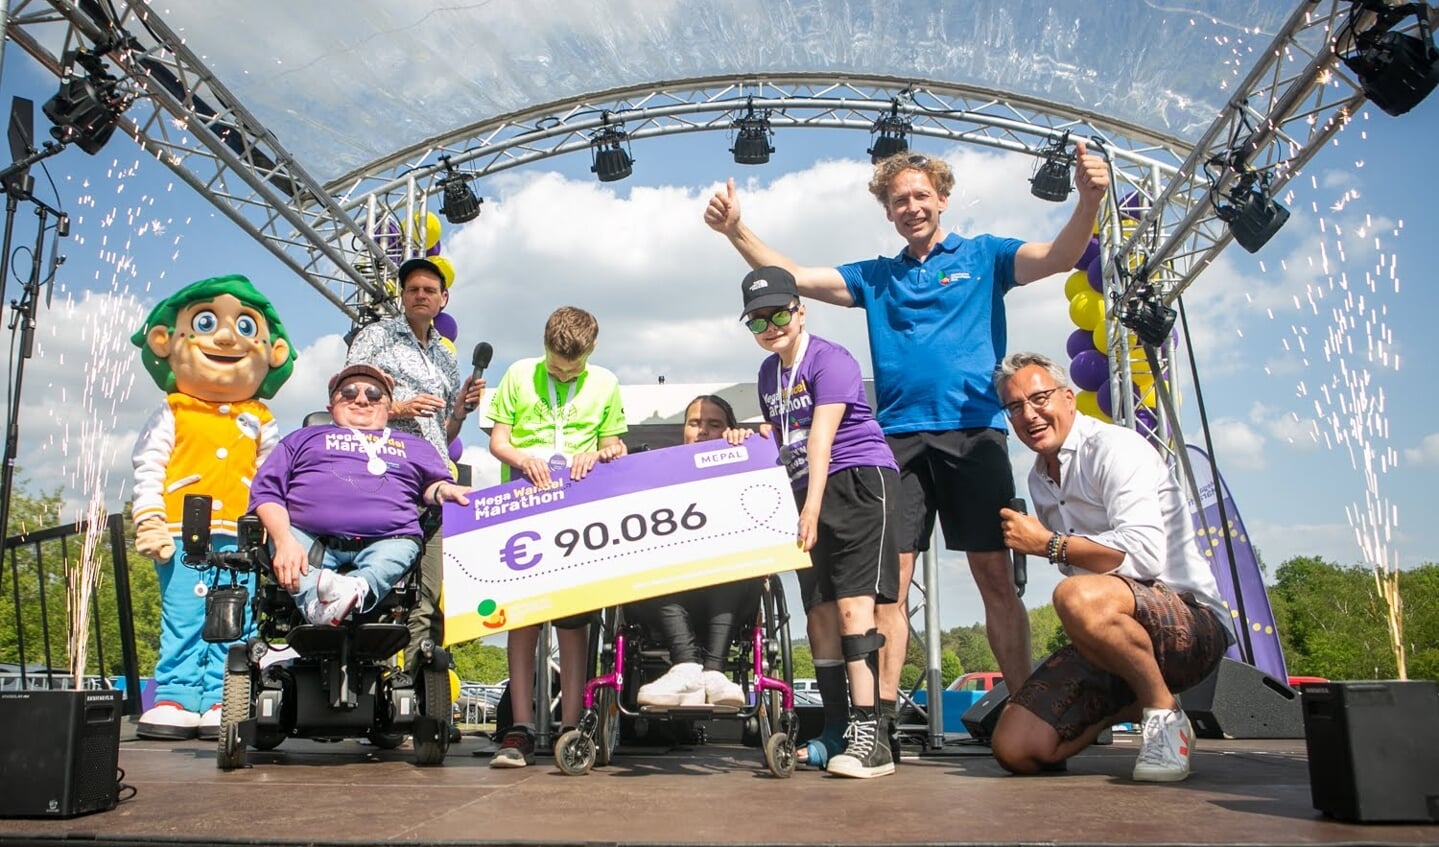 Op zaterdag 14 mei vond de allereerste editie van de Mega Wandel Marathon plaats in Arnhem: een wandelevent op initiatief van Stichting het Gehandicapte Kind om geld op te halen voor projecten om kinderen met een handicap te steunen. 